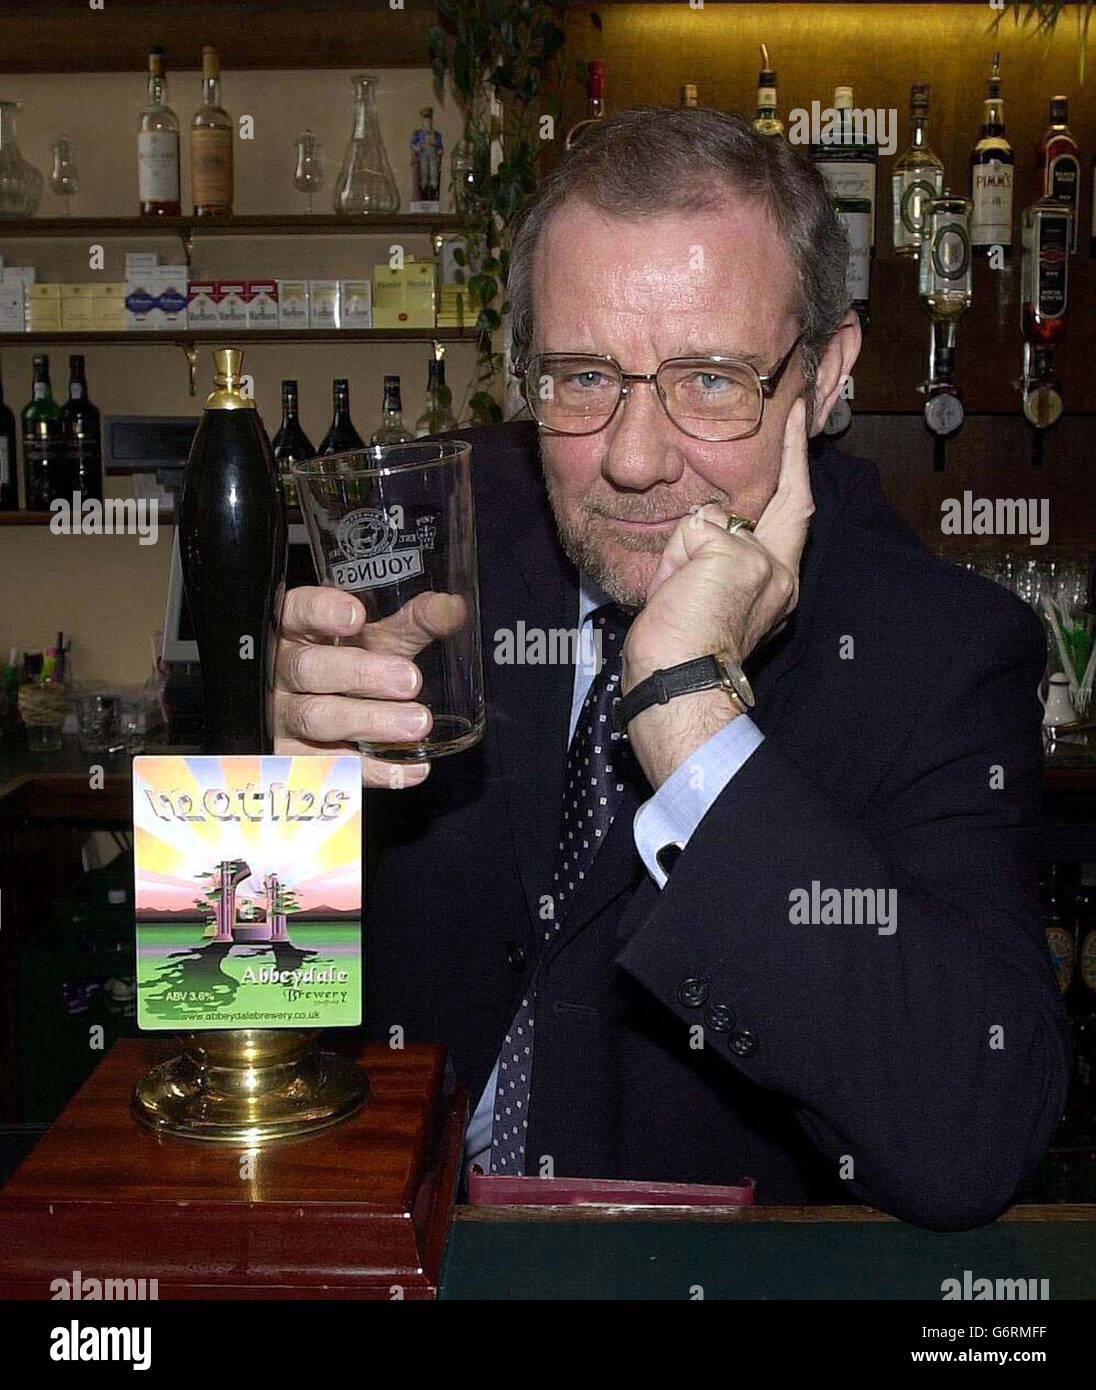 Richard Caborn MP (Sheffield) dans le bar des étrangers de la Chambre des communes, photographié devant une pompe de brasserie de Sheffield. M. Cabourn a un verre vide comme la bière a épuisé, tel est sa popularité. Banque D'Images